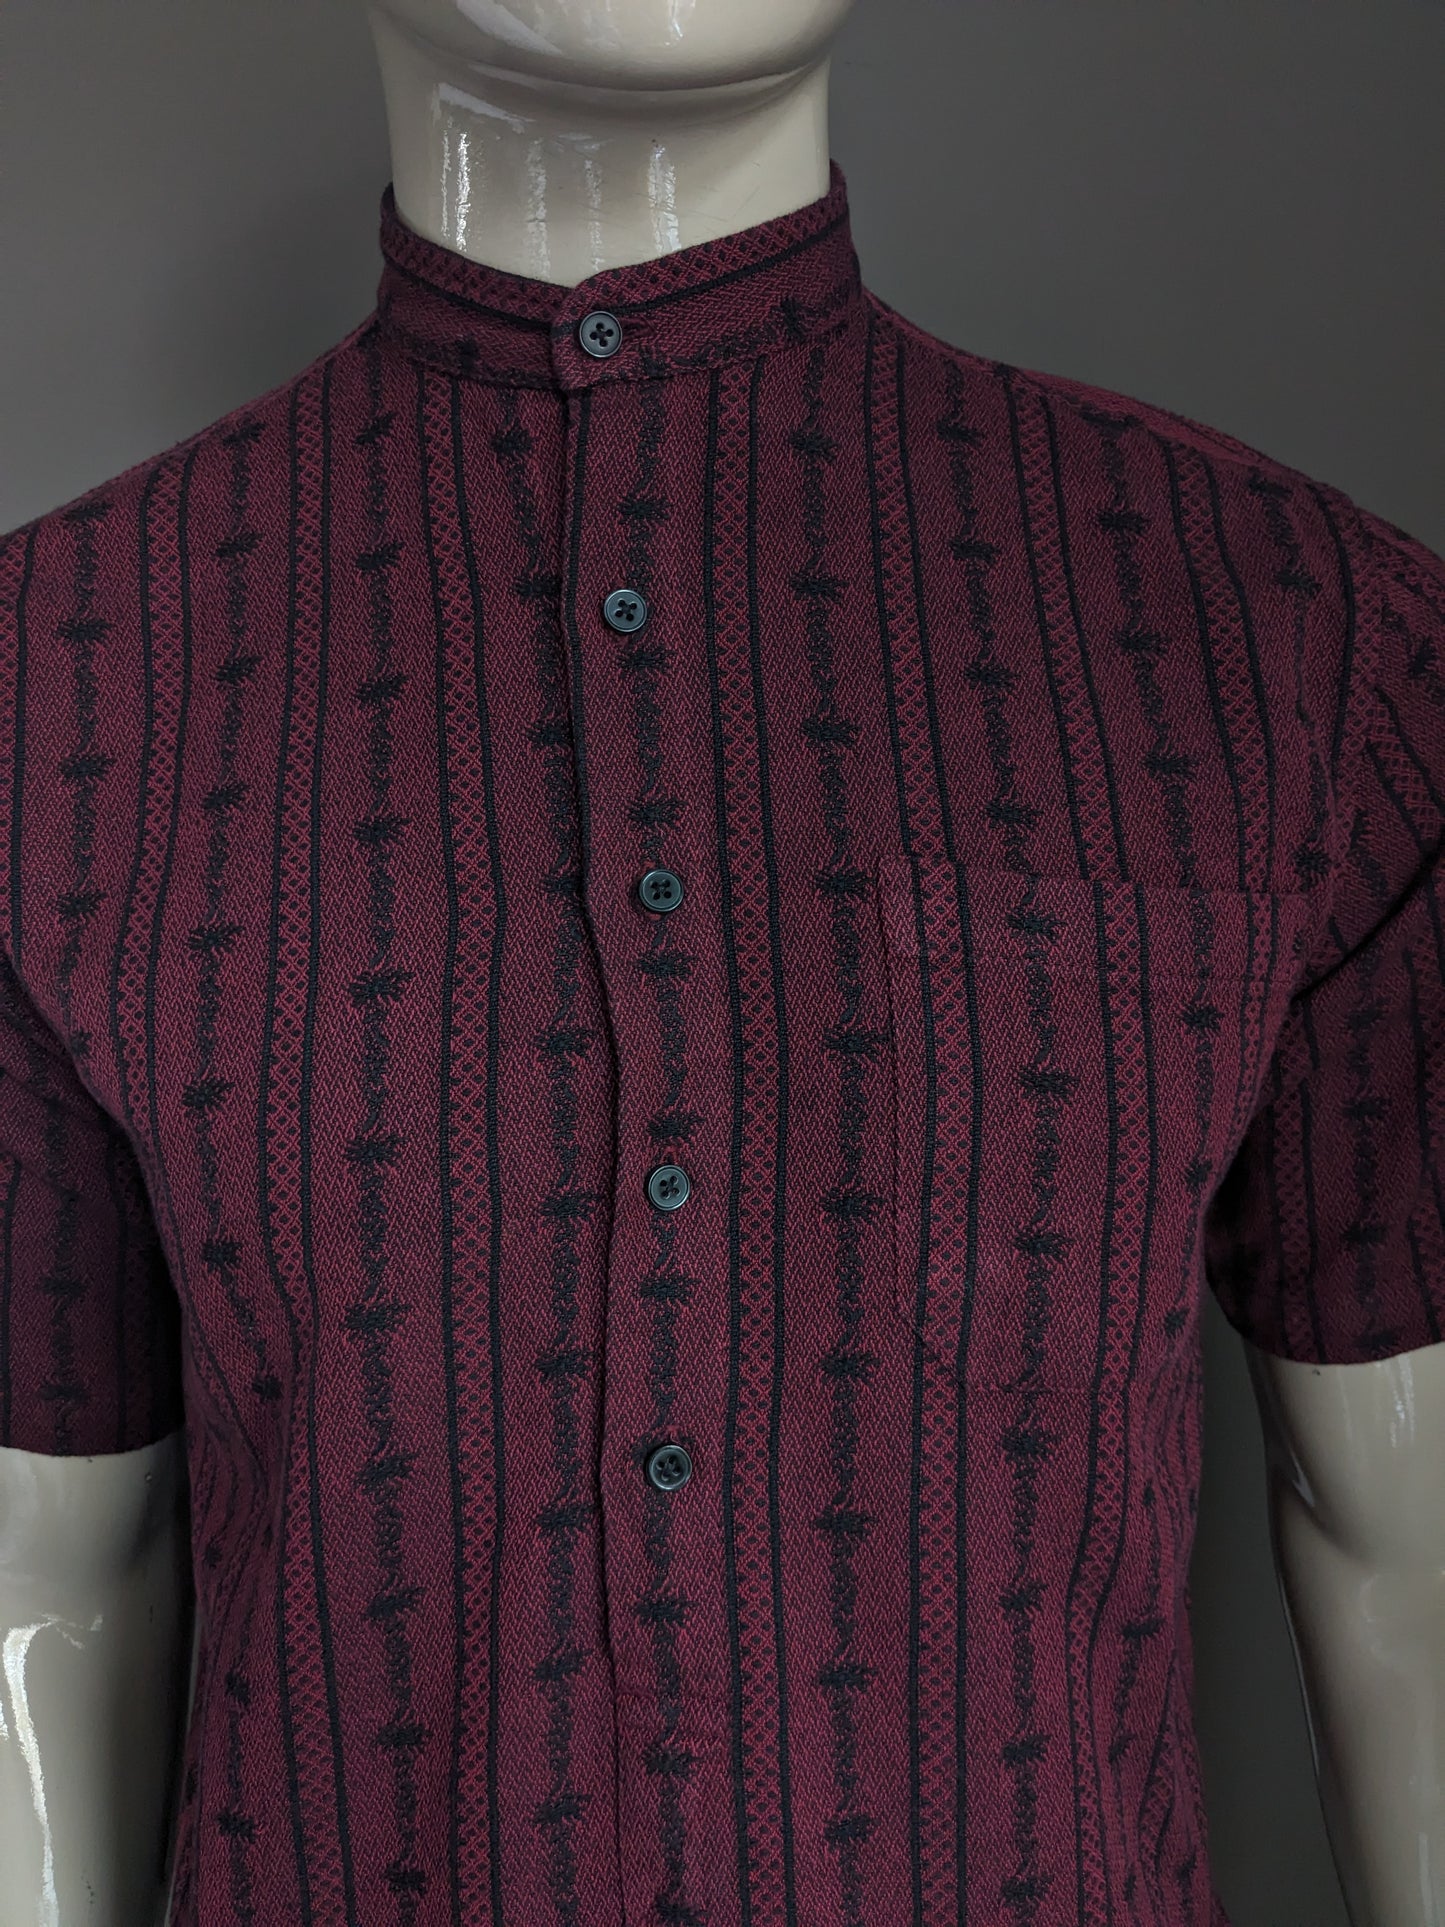 Camicia atrio vintage con bottoni e mao / agricoltori / collare verticale. Bordeaux di colore nero. Dimensione S / M.